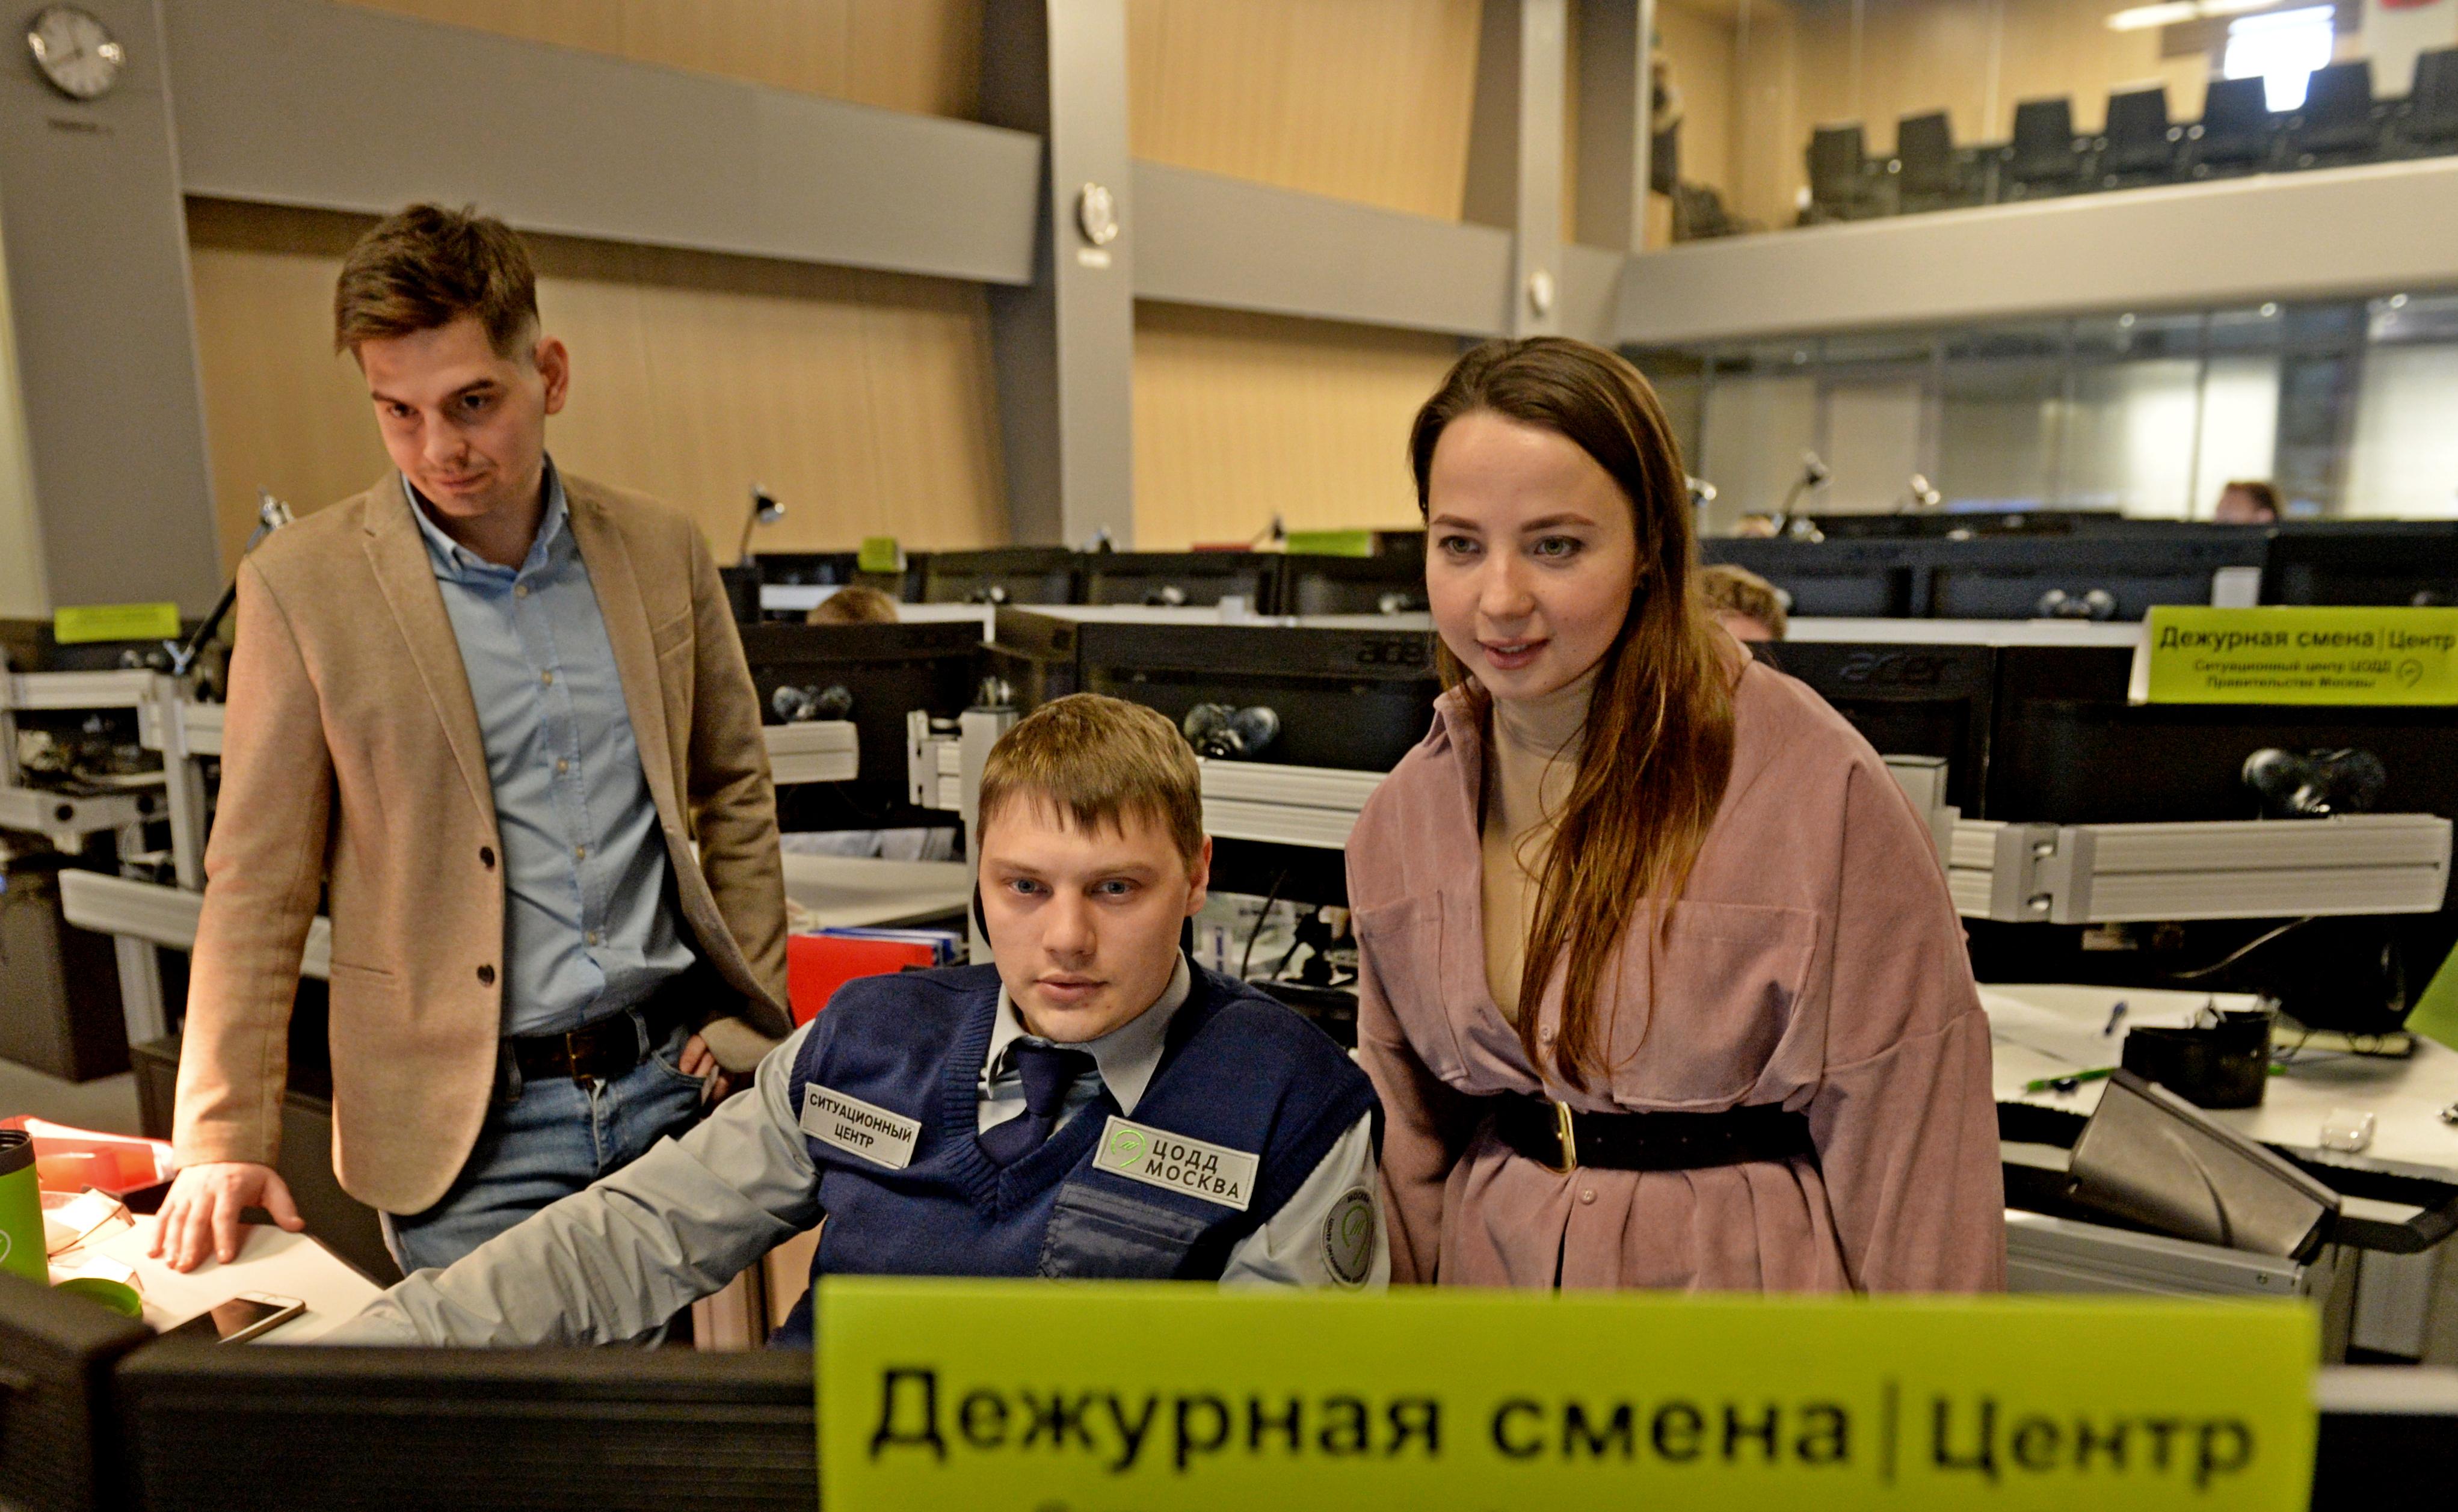 Студентам показали работу интеллектуальной транспортной системы Москвы